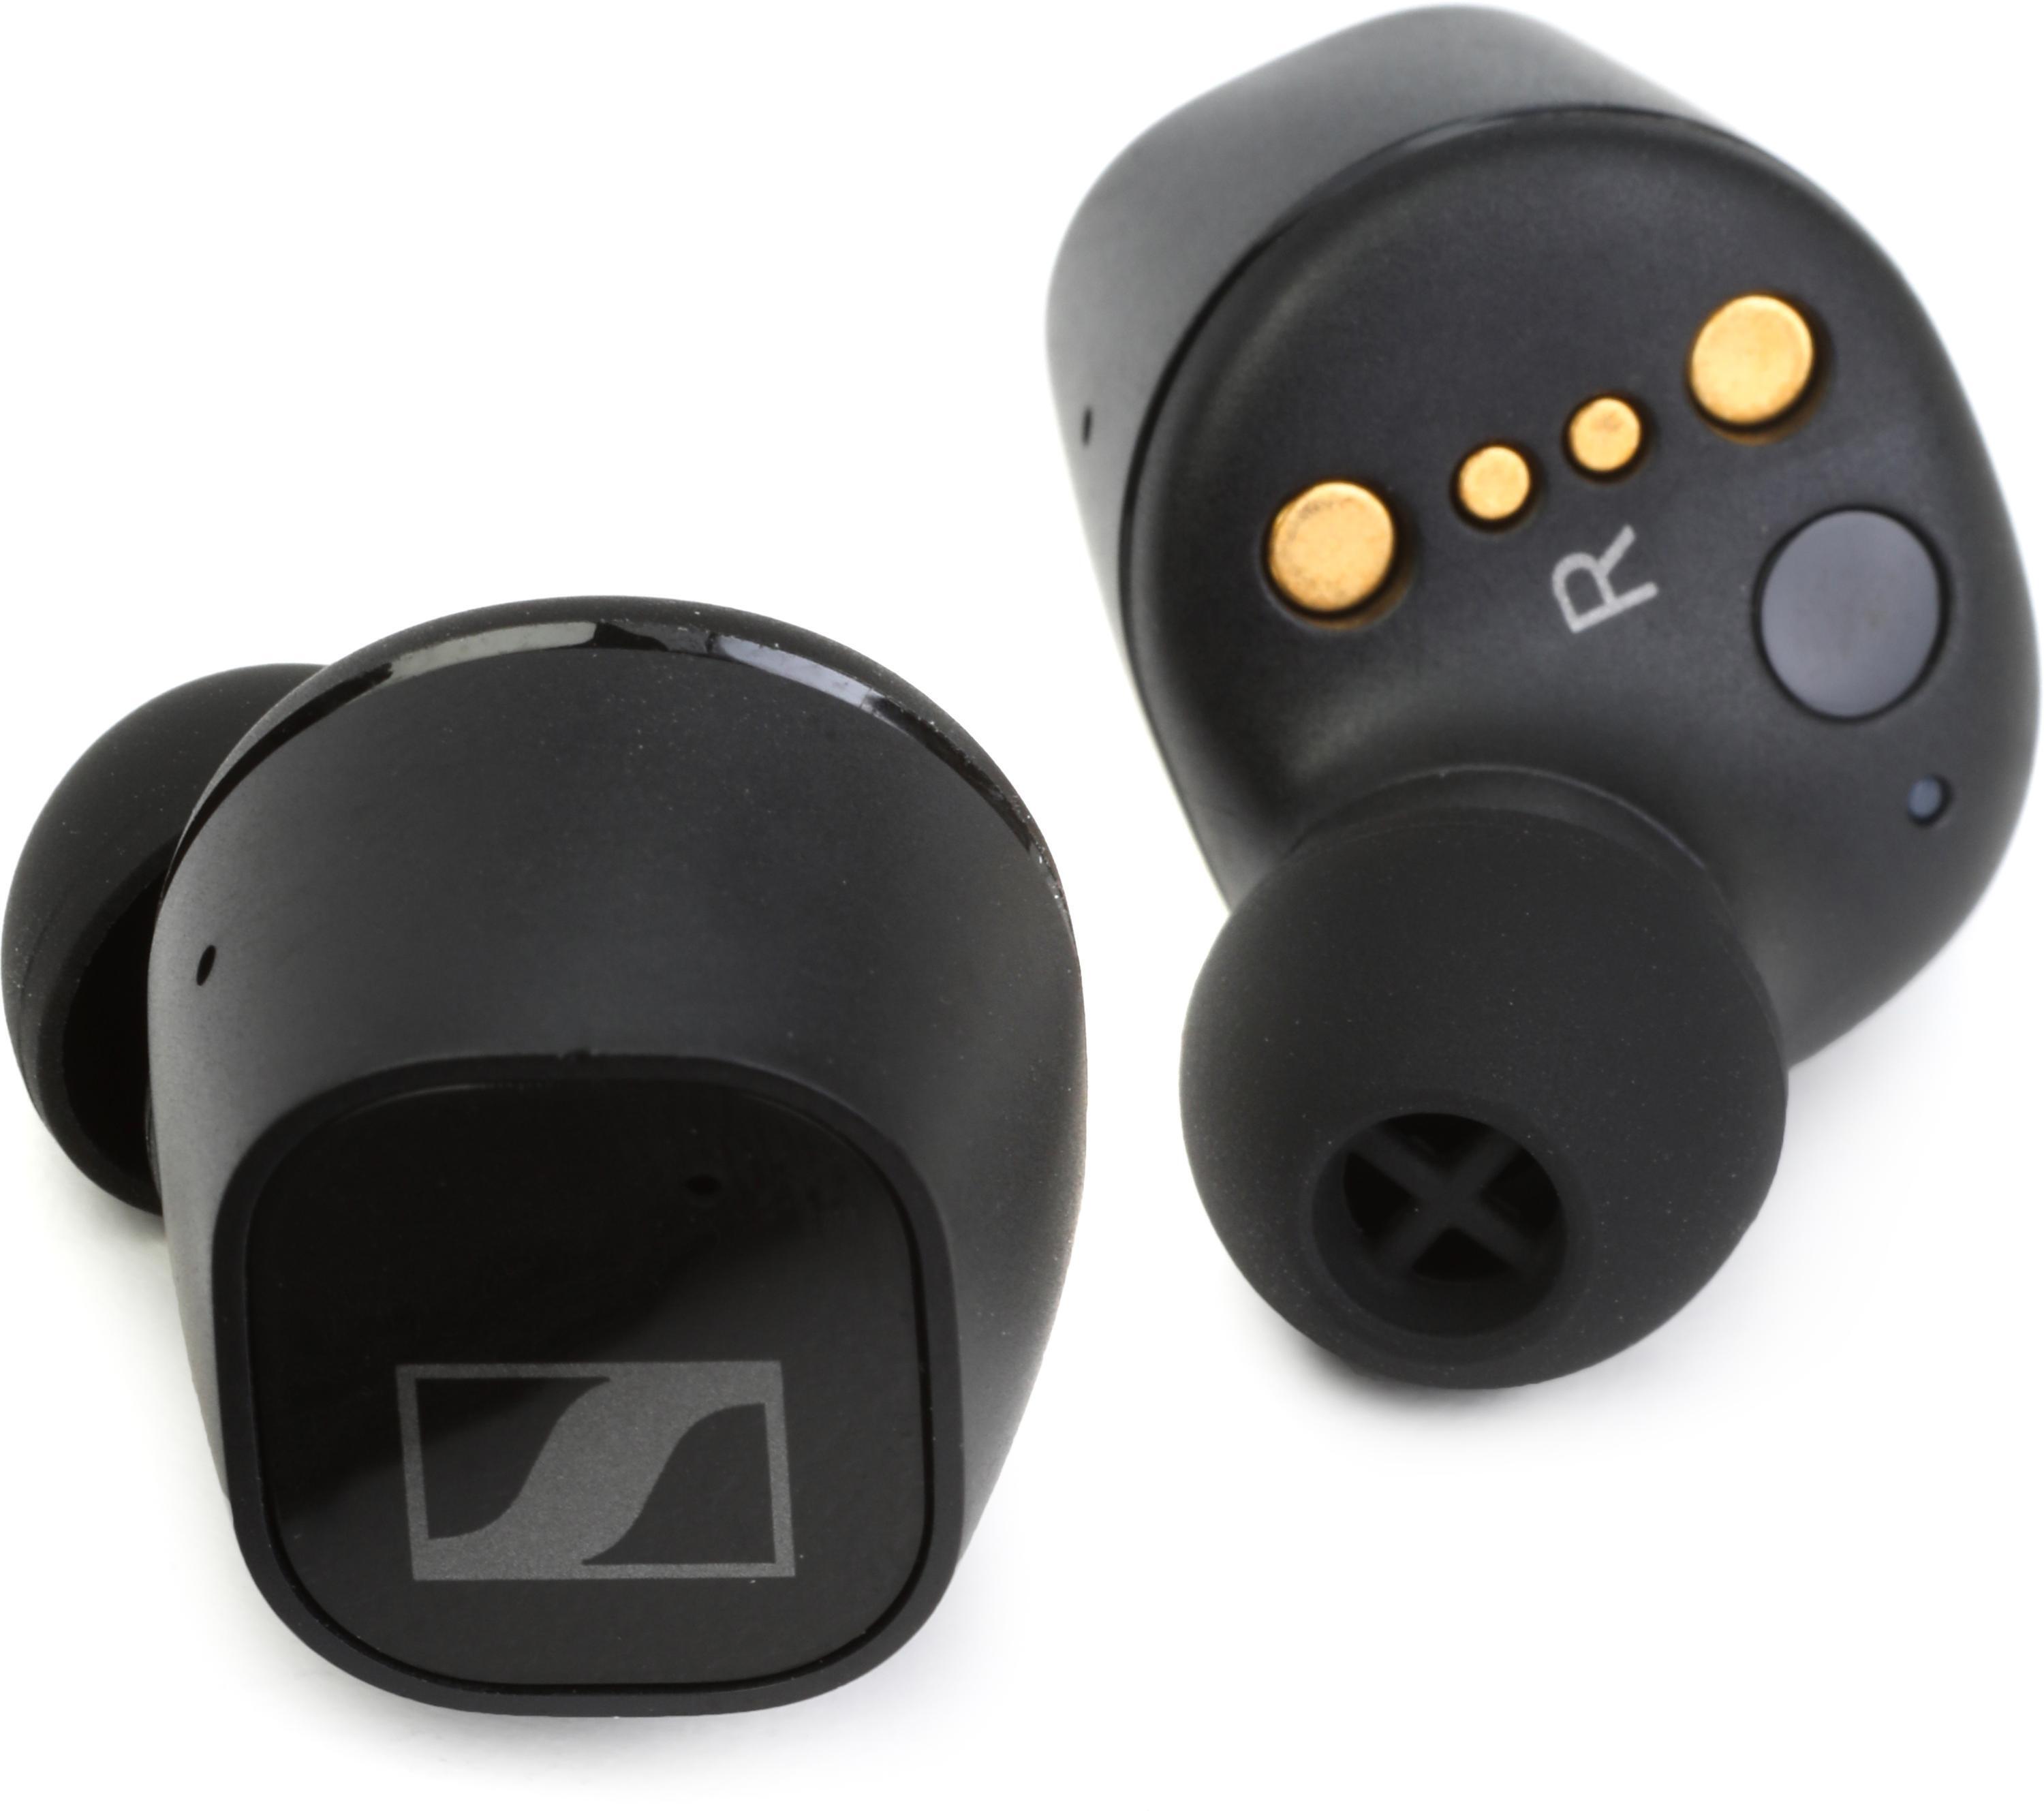 CX Plus True Wireless Earbuds - Black - Sweetwater